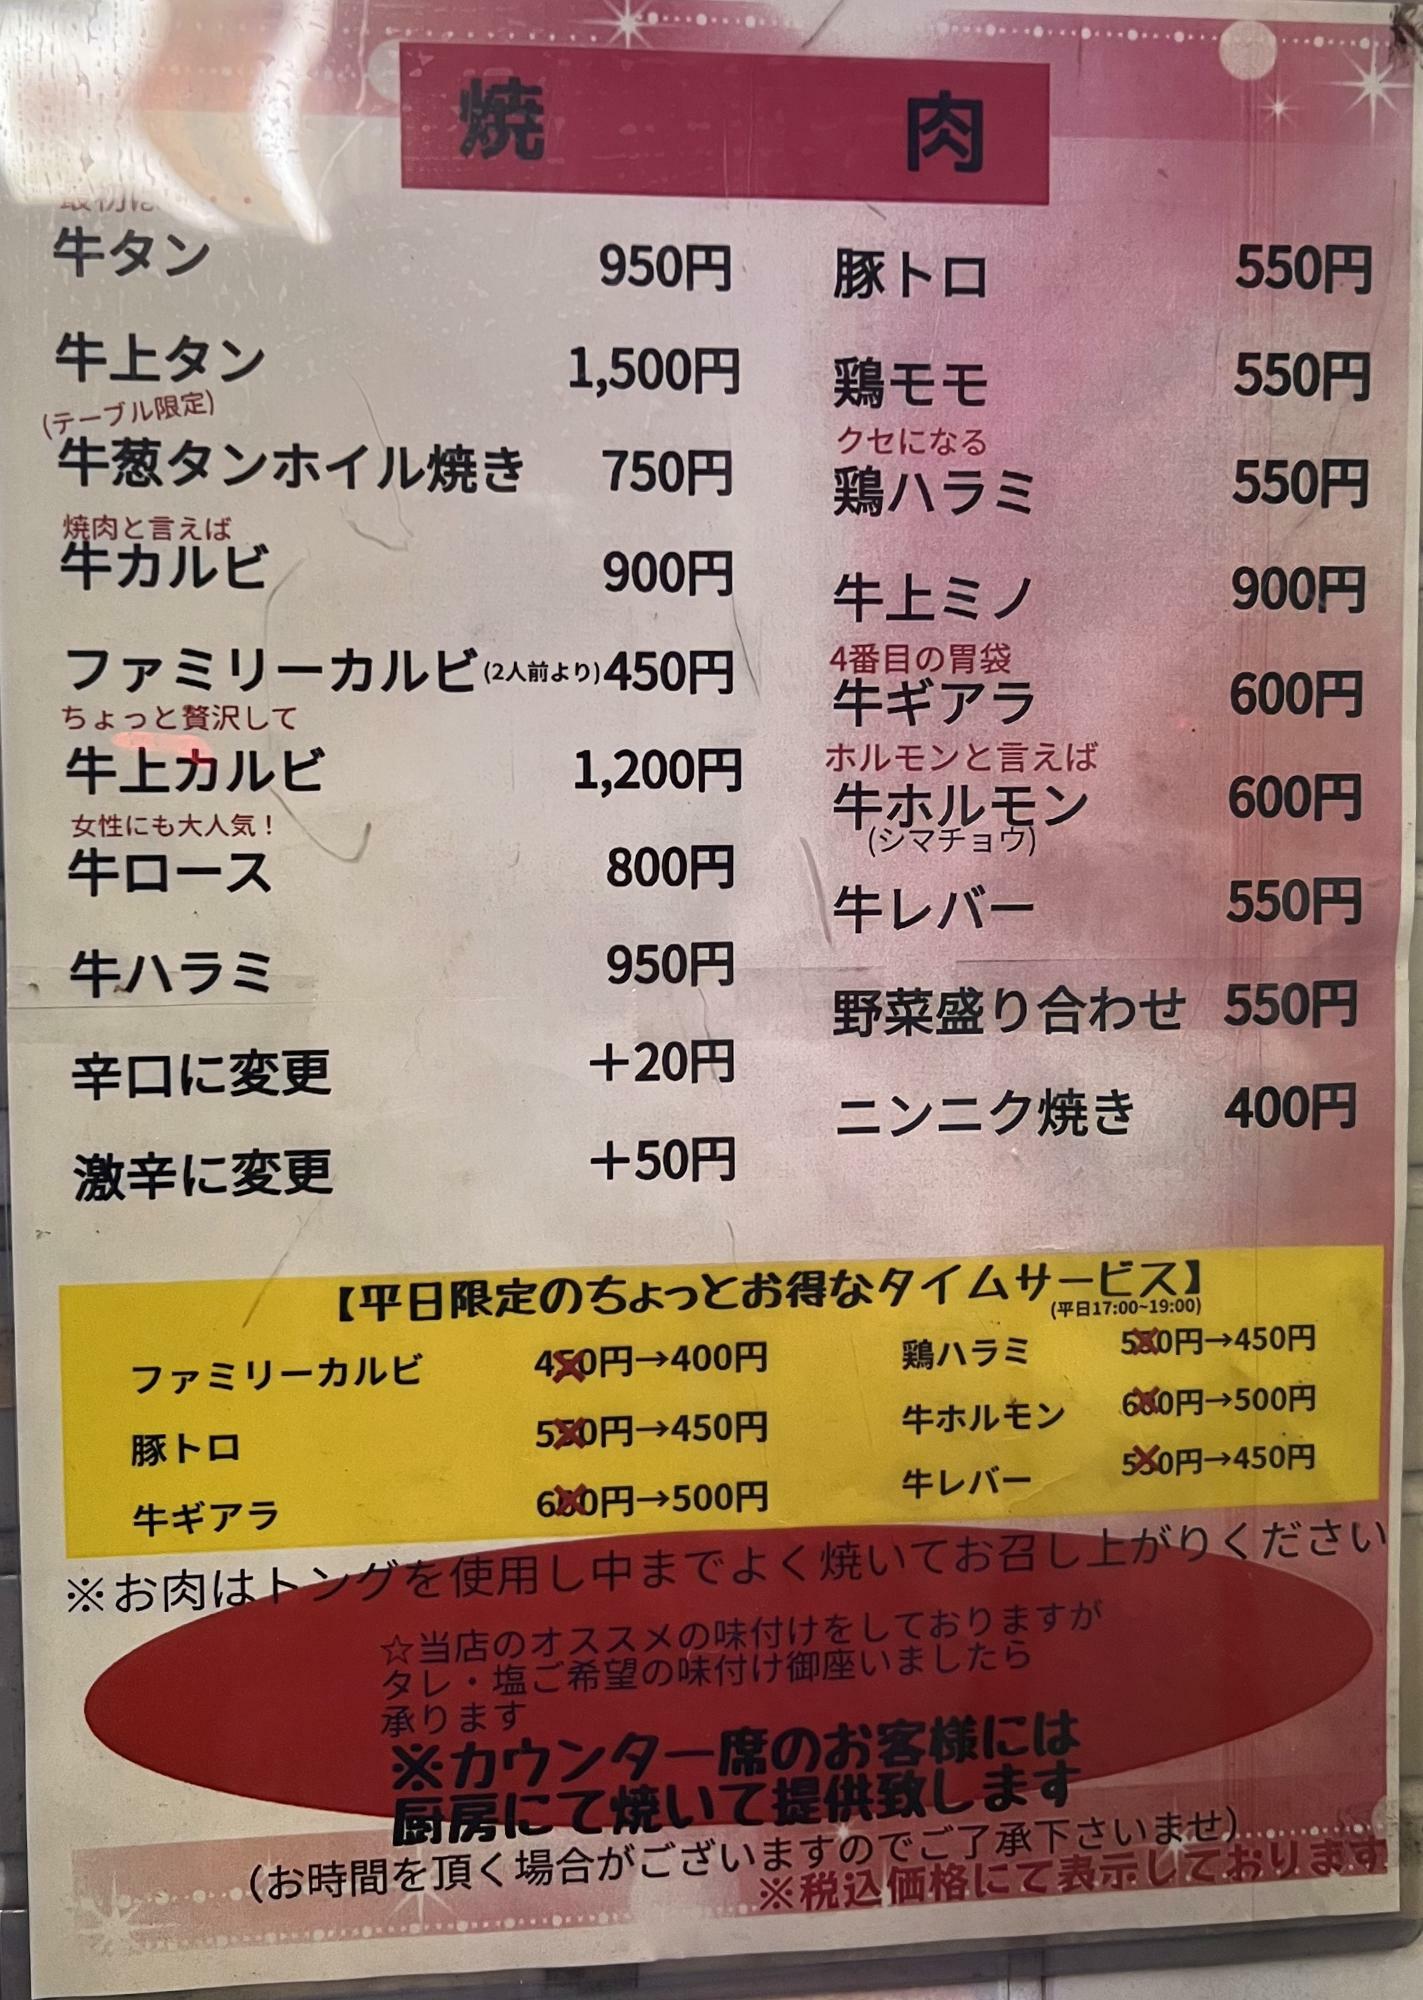 平日だとメニューよっては１００円安く提供してくれます。